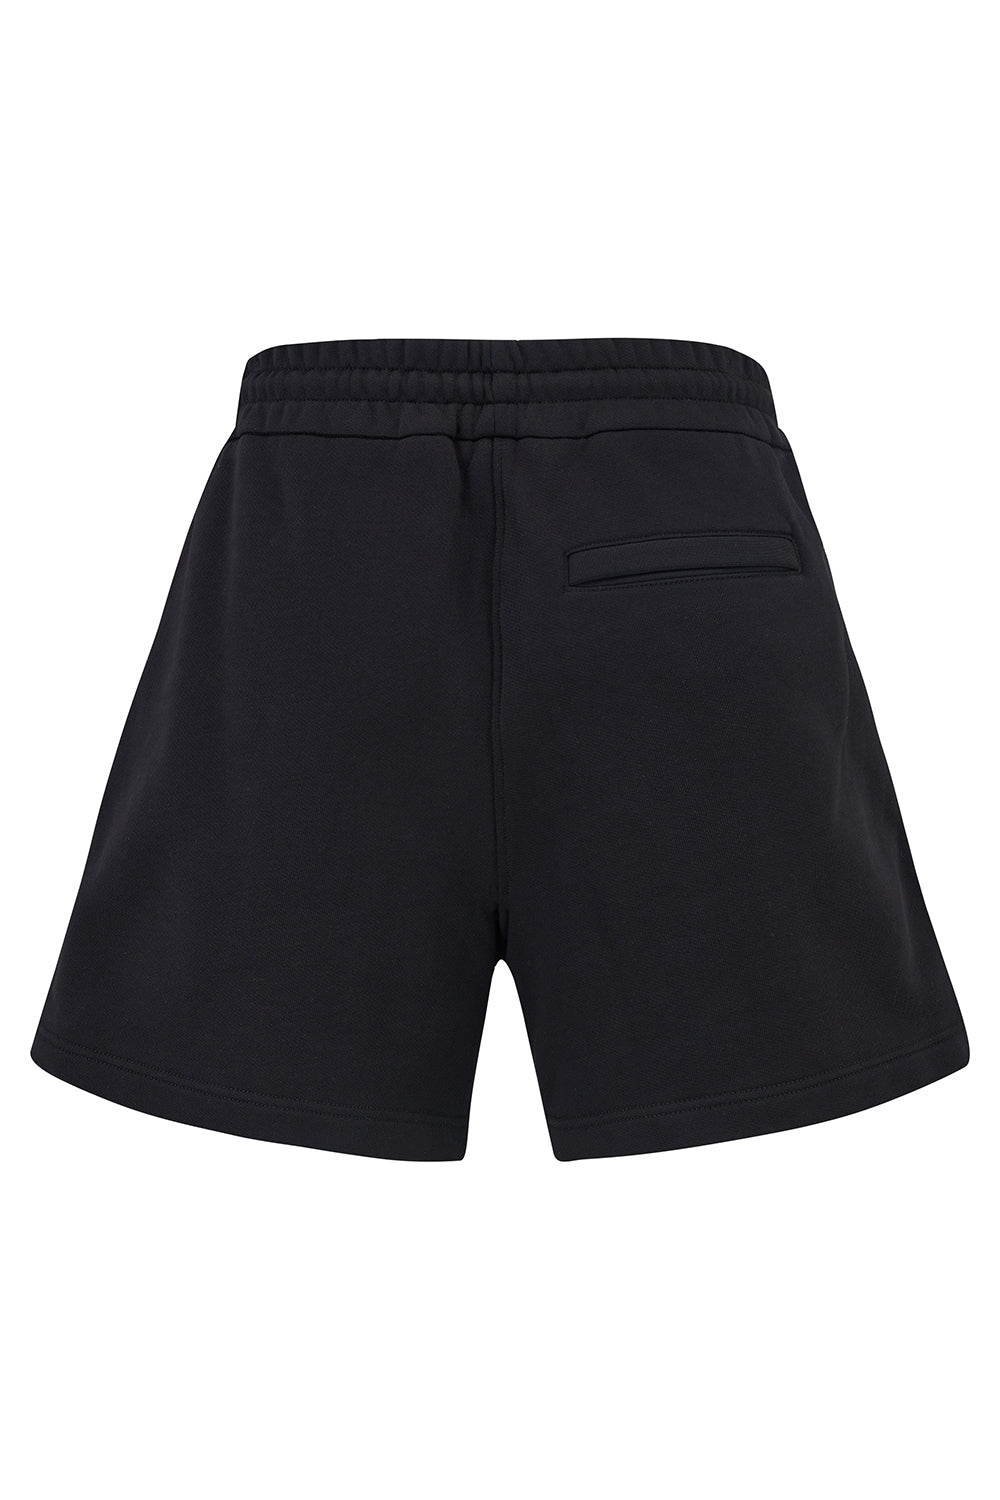 Missoni Men’s Shorts Black - Back View